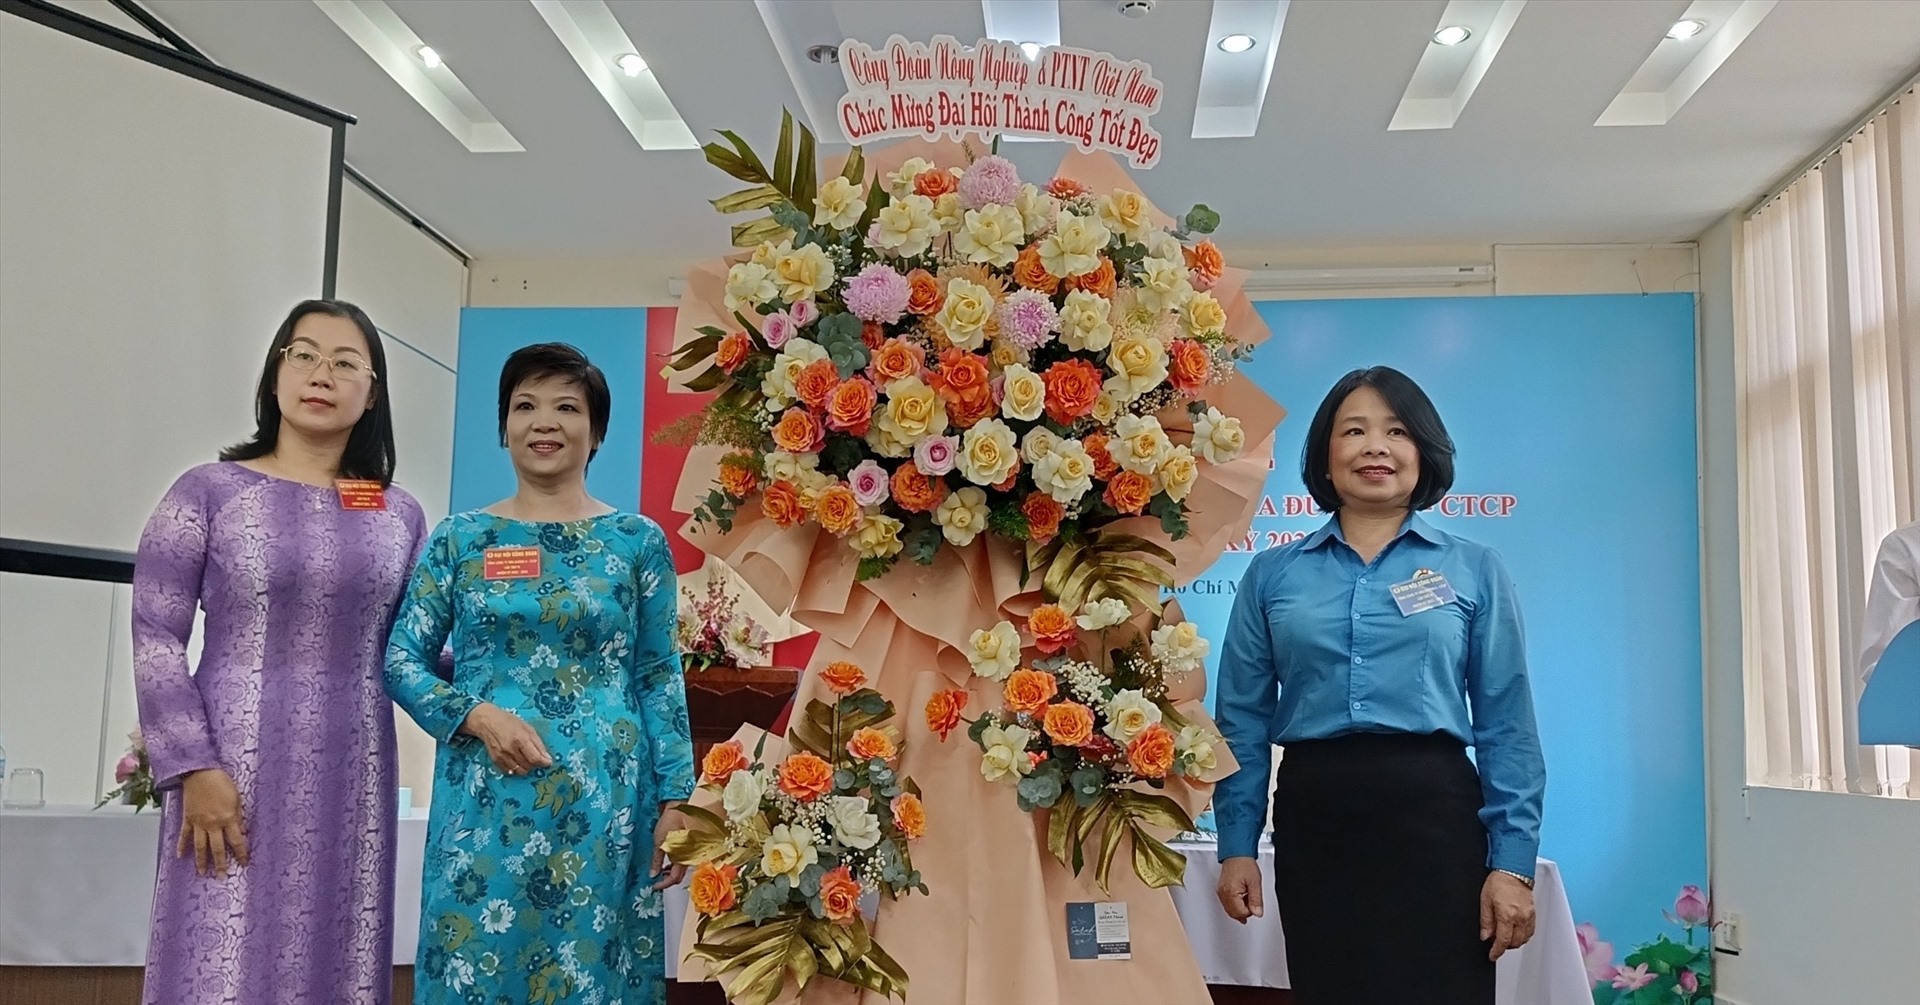 Phó Chủ tịch Công đoàn Nông nghiệp và Phát triển nông thôn Việt Nam Ngô Thị Anh Tuyên (ngoài cùng bên phải) đại diện Công đoàn ngành chúc mừng Đại hội. Ảnh: CĐNN